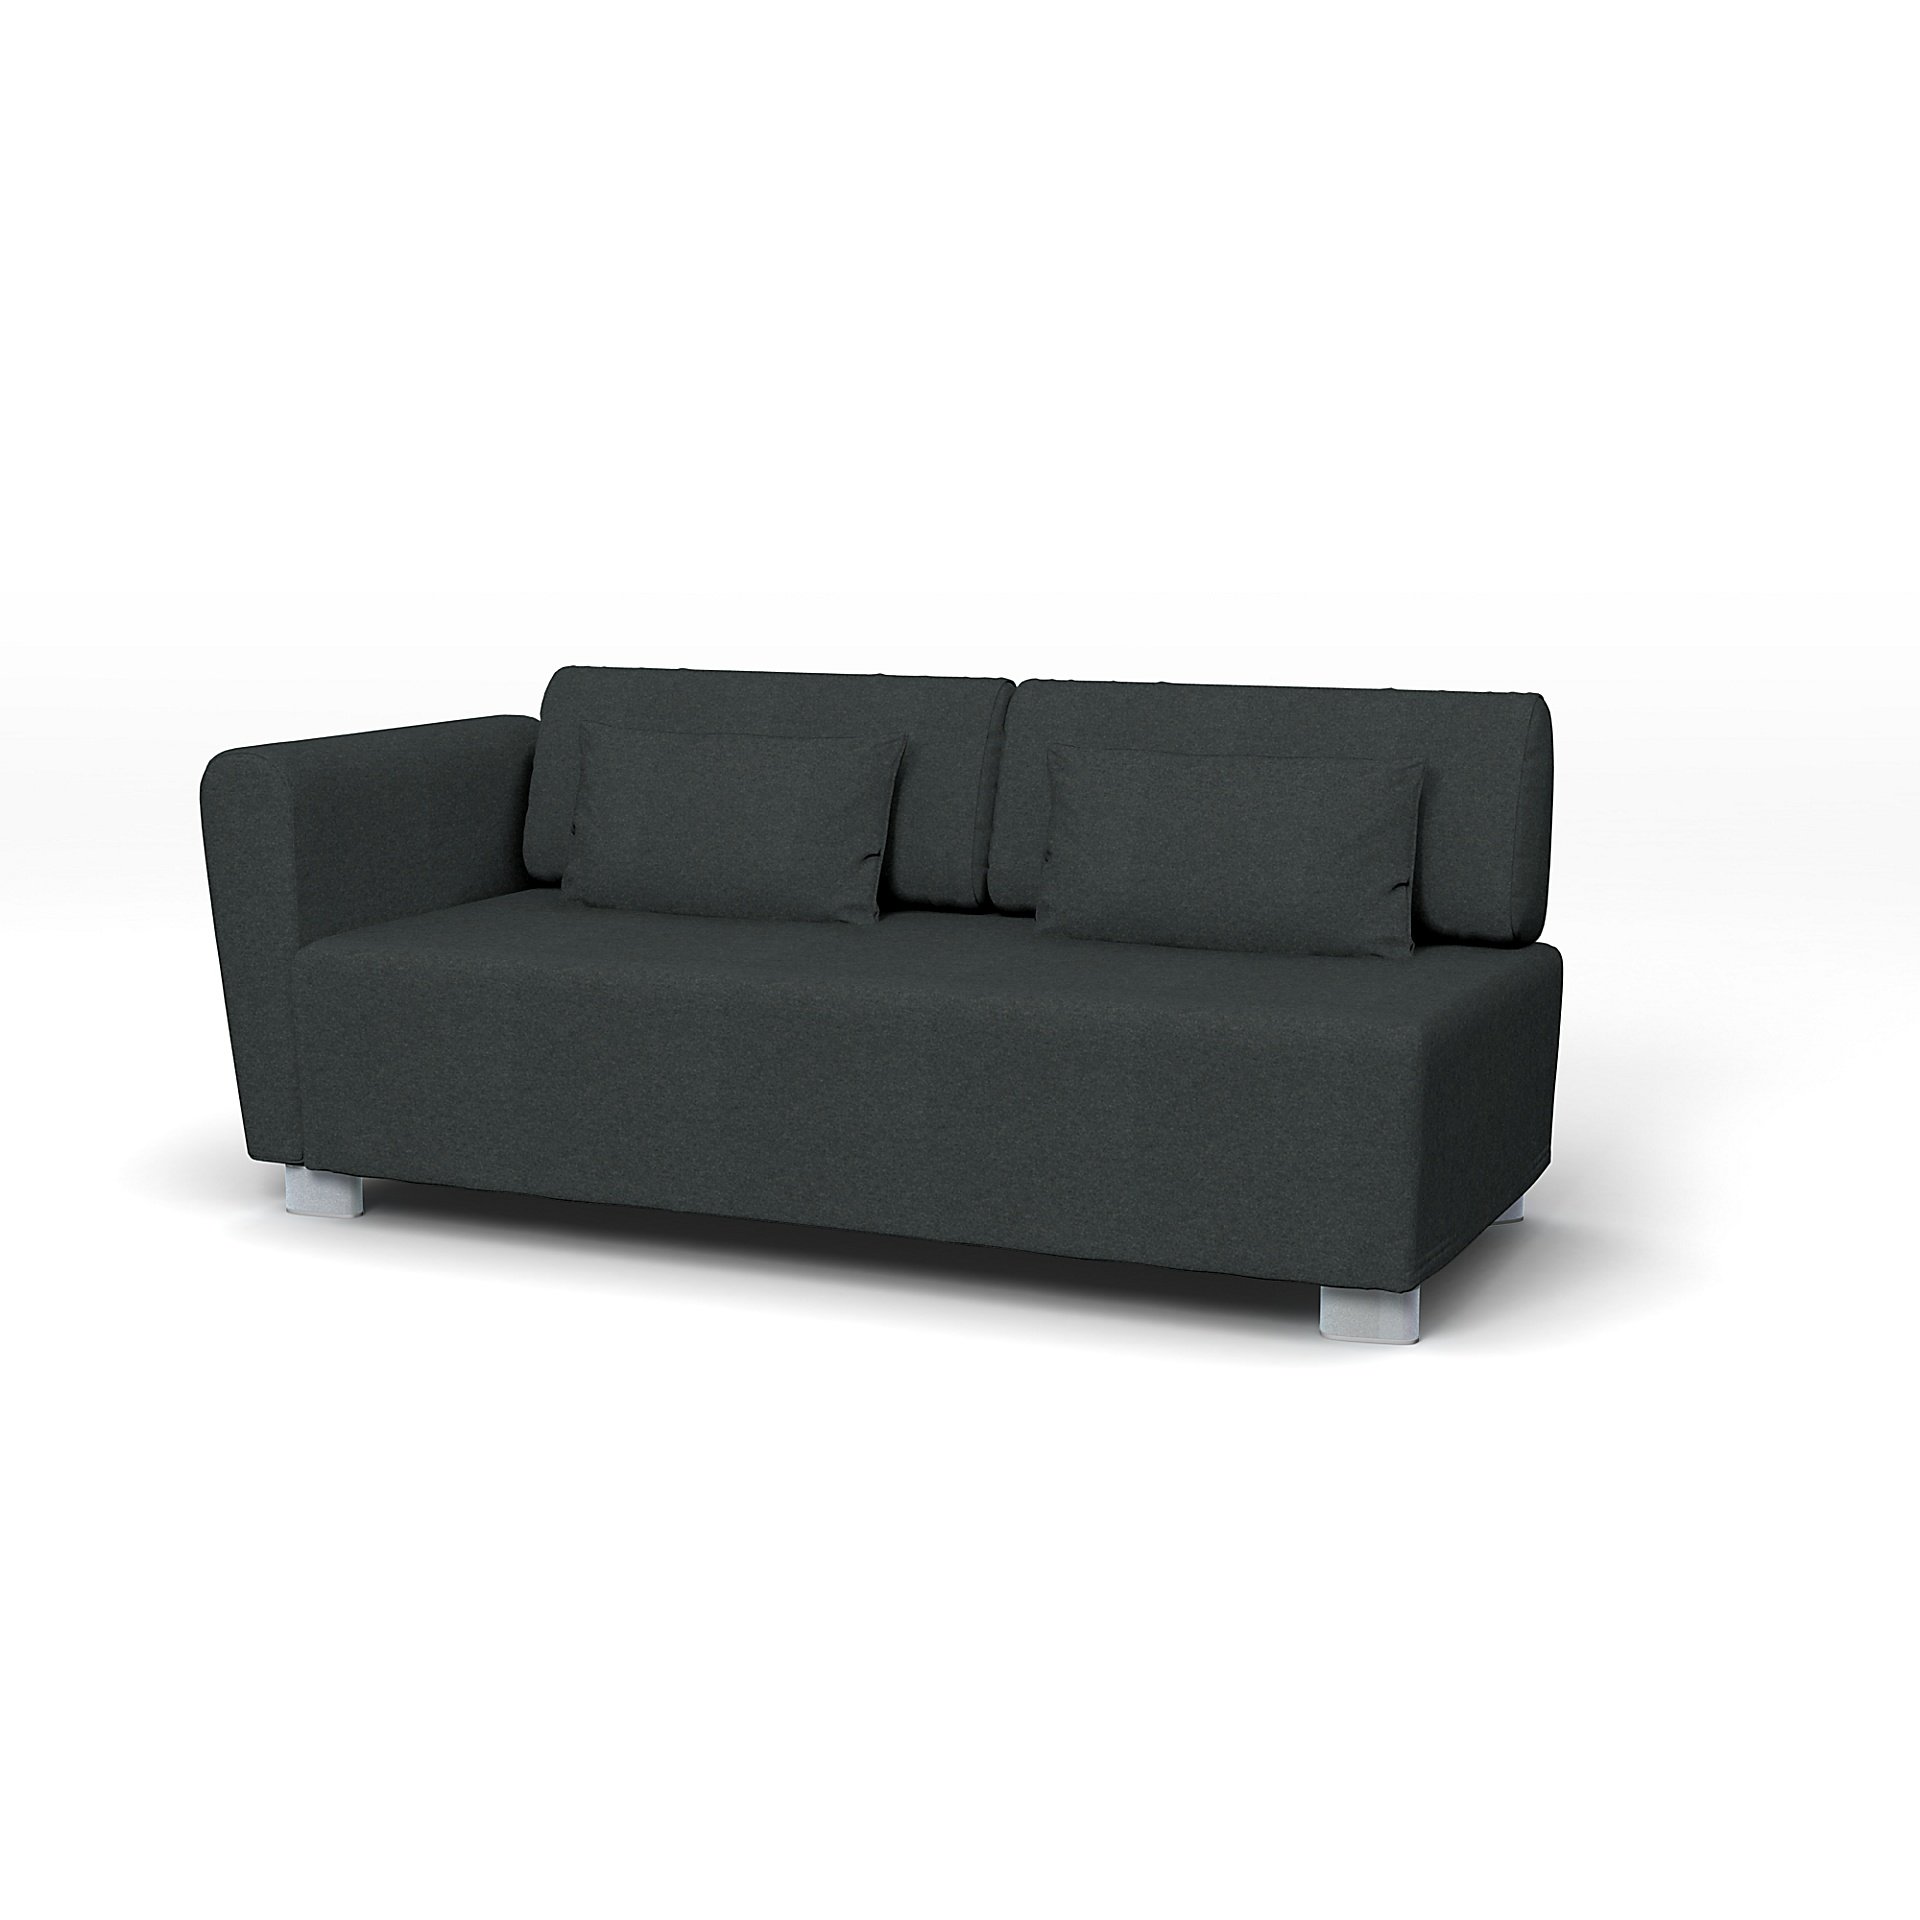 IKEA - Mysinge 2 Seater Sofa with Armrest Cover, Stone, Wool - Bemz